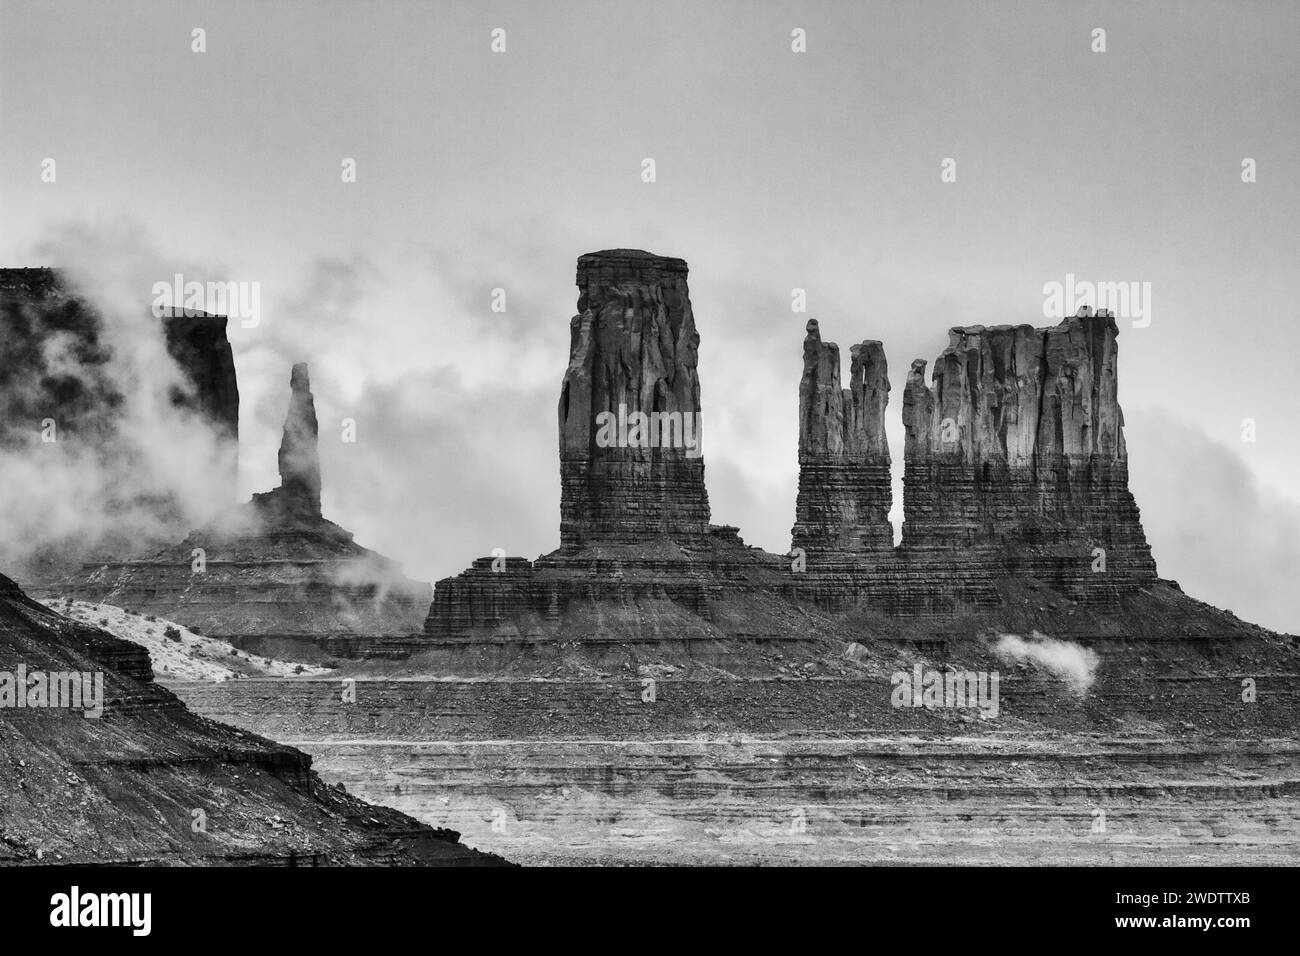 Niedrige Wolken rund um die Monumente von Utah im Monument Valley, Monument Valley Navajo Tribal Park, Arizona. LR: Der König auf seinem Thron, das Schloss, der Be Stockfoto